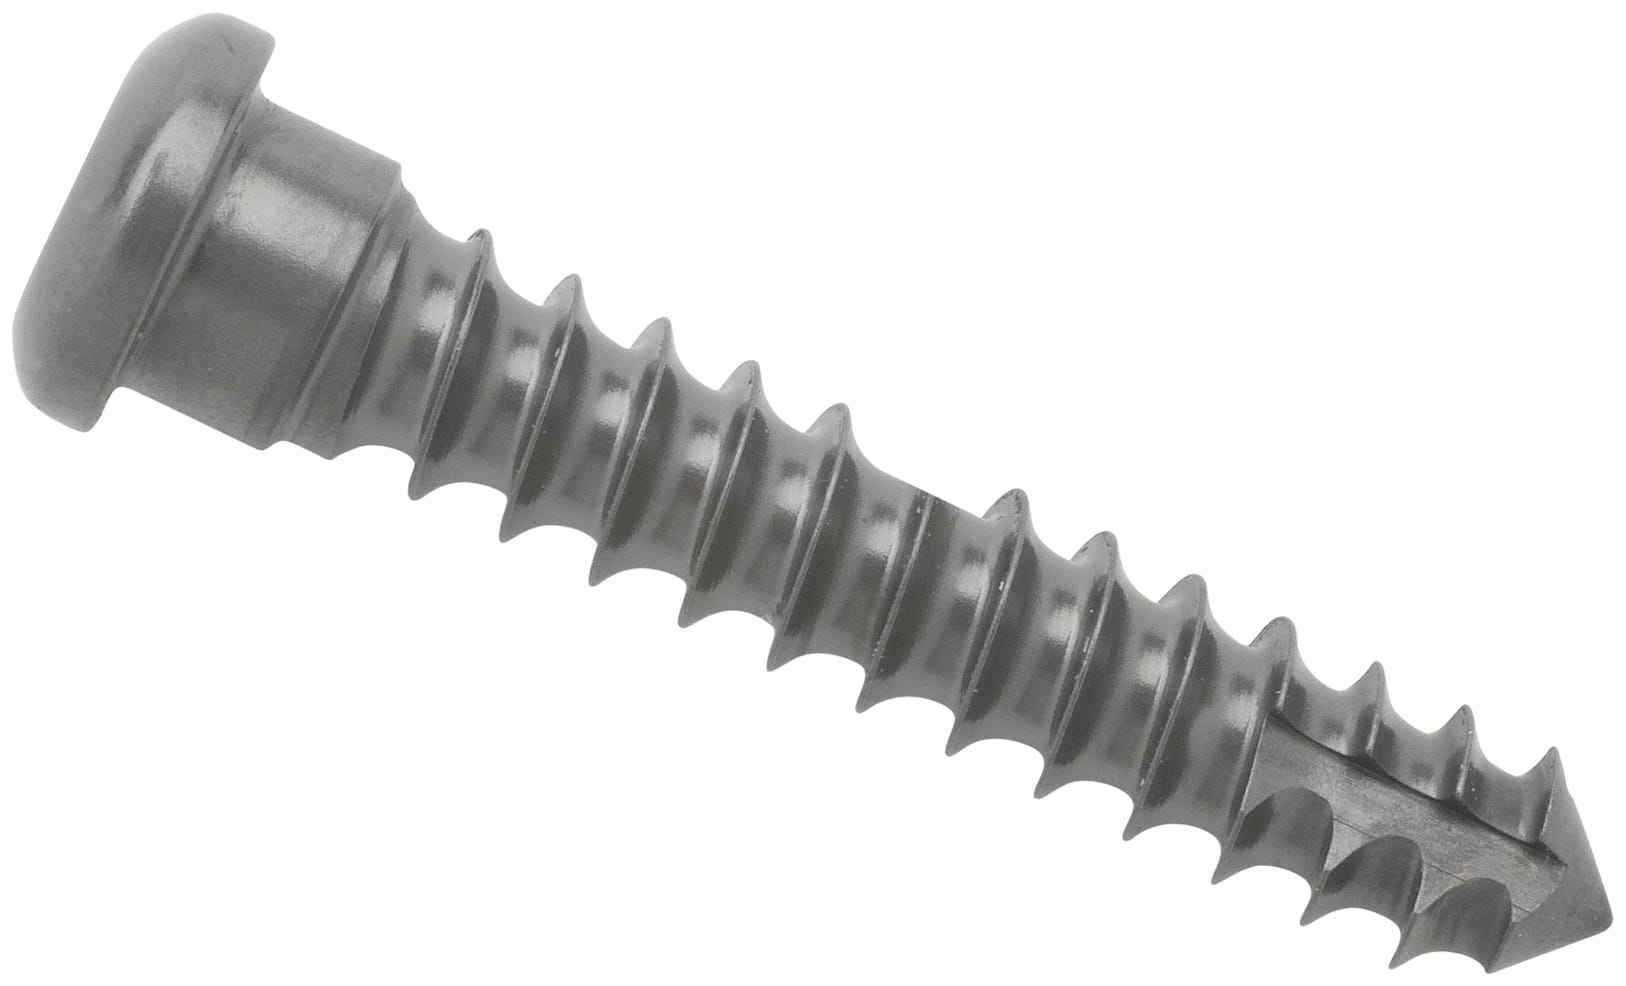 Cortical Screw, 3.5 mm x 24 mm